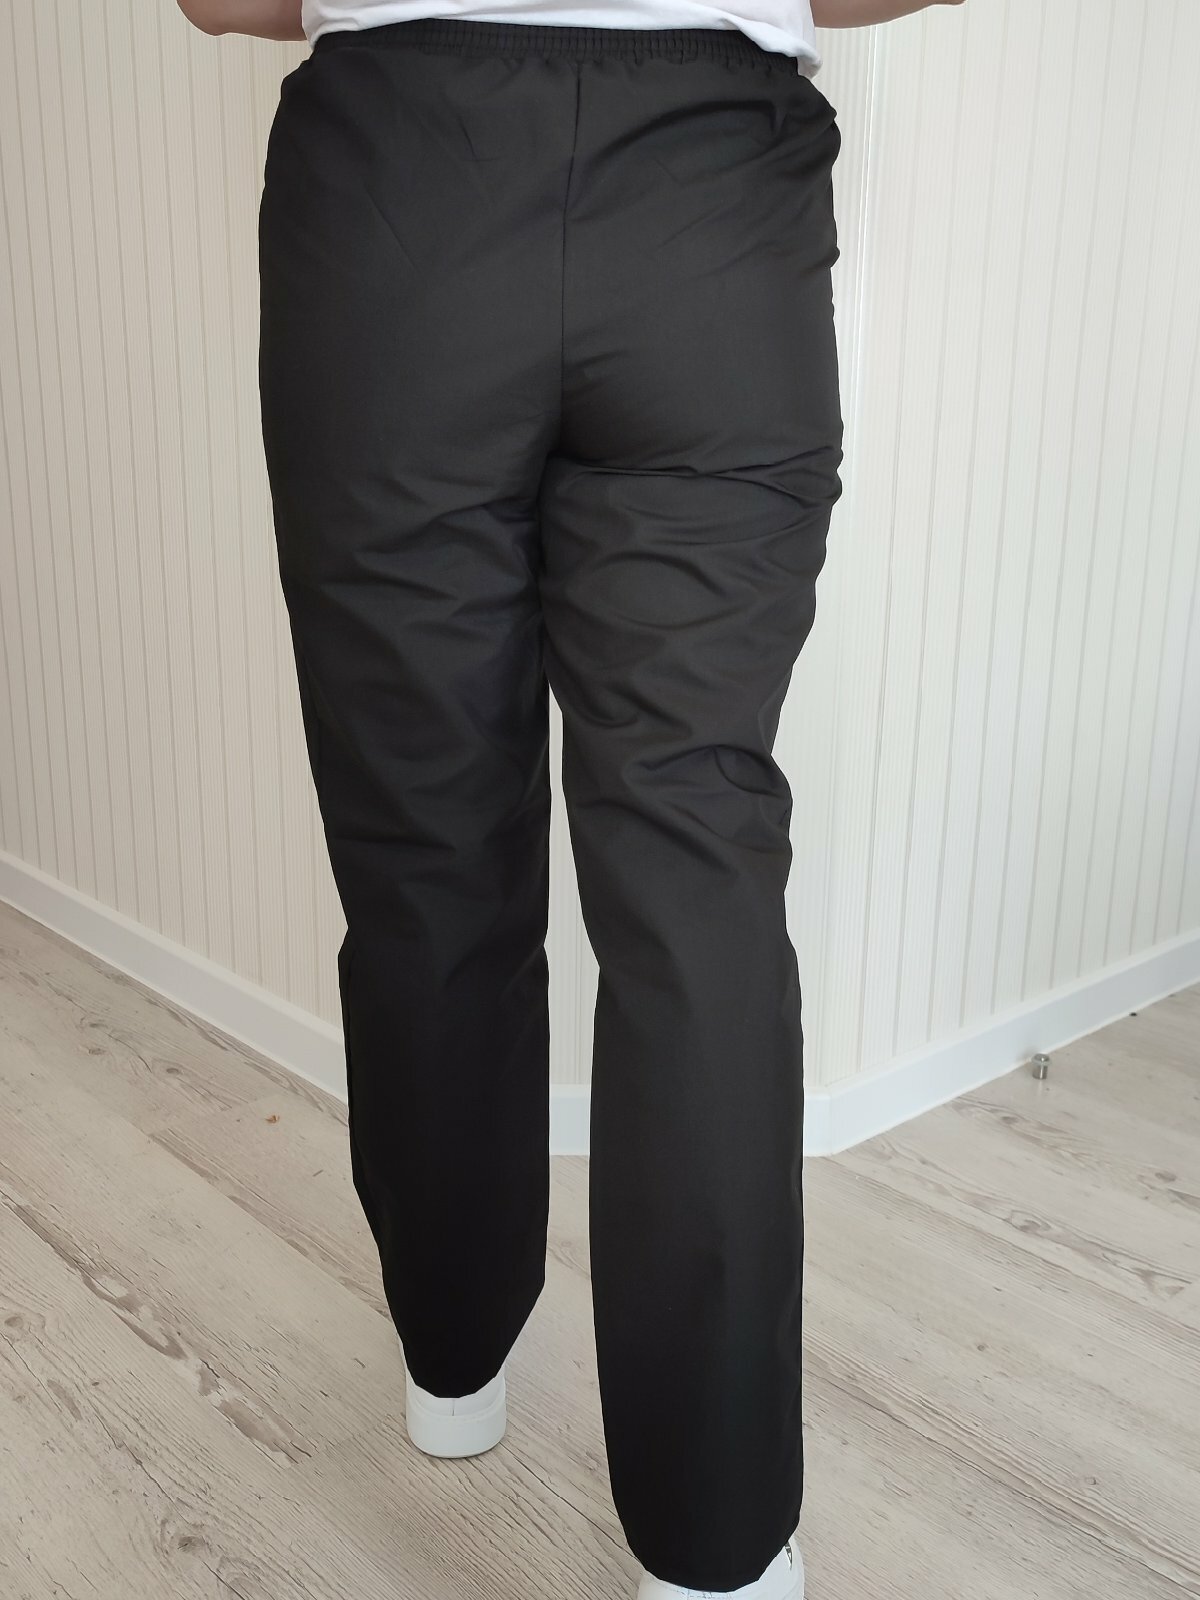 "Референт Стиль" - медицинские брюки черные для женщин, размер 58